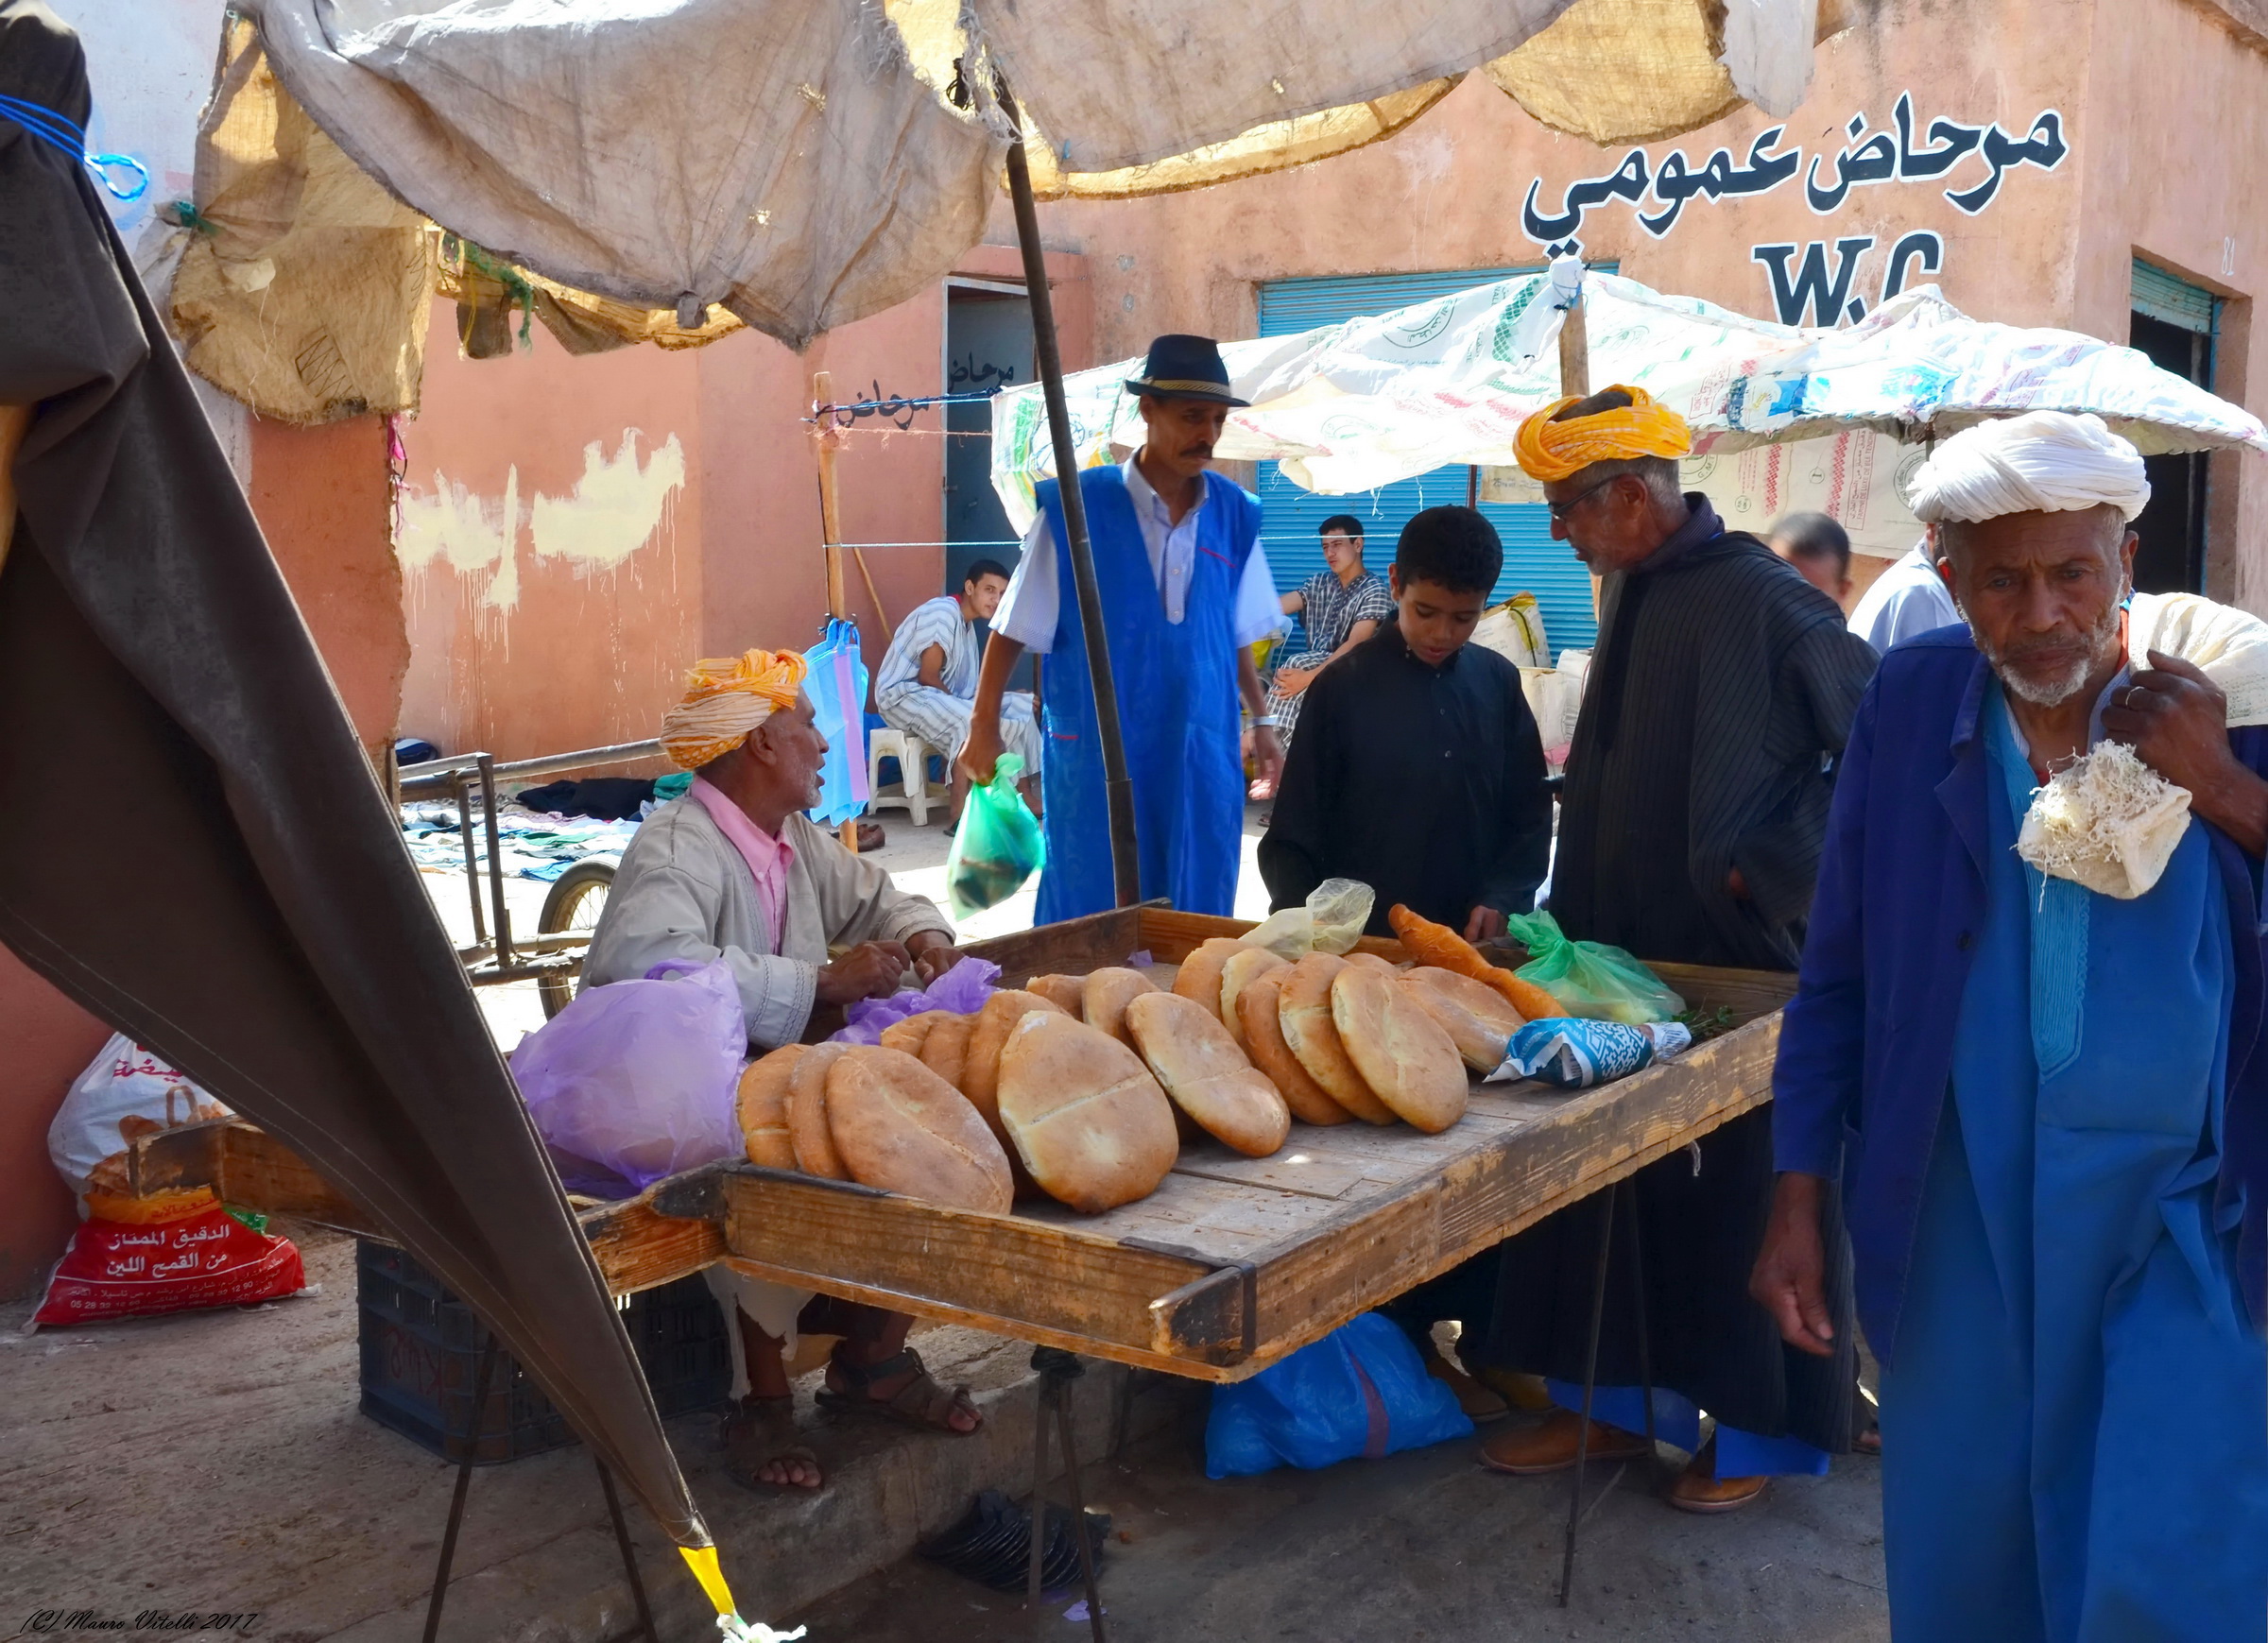 The bread seller (unusual Morocco)...